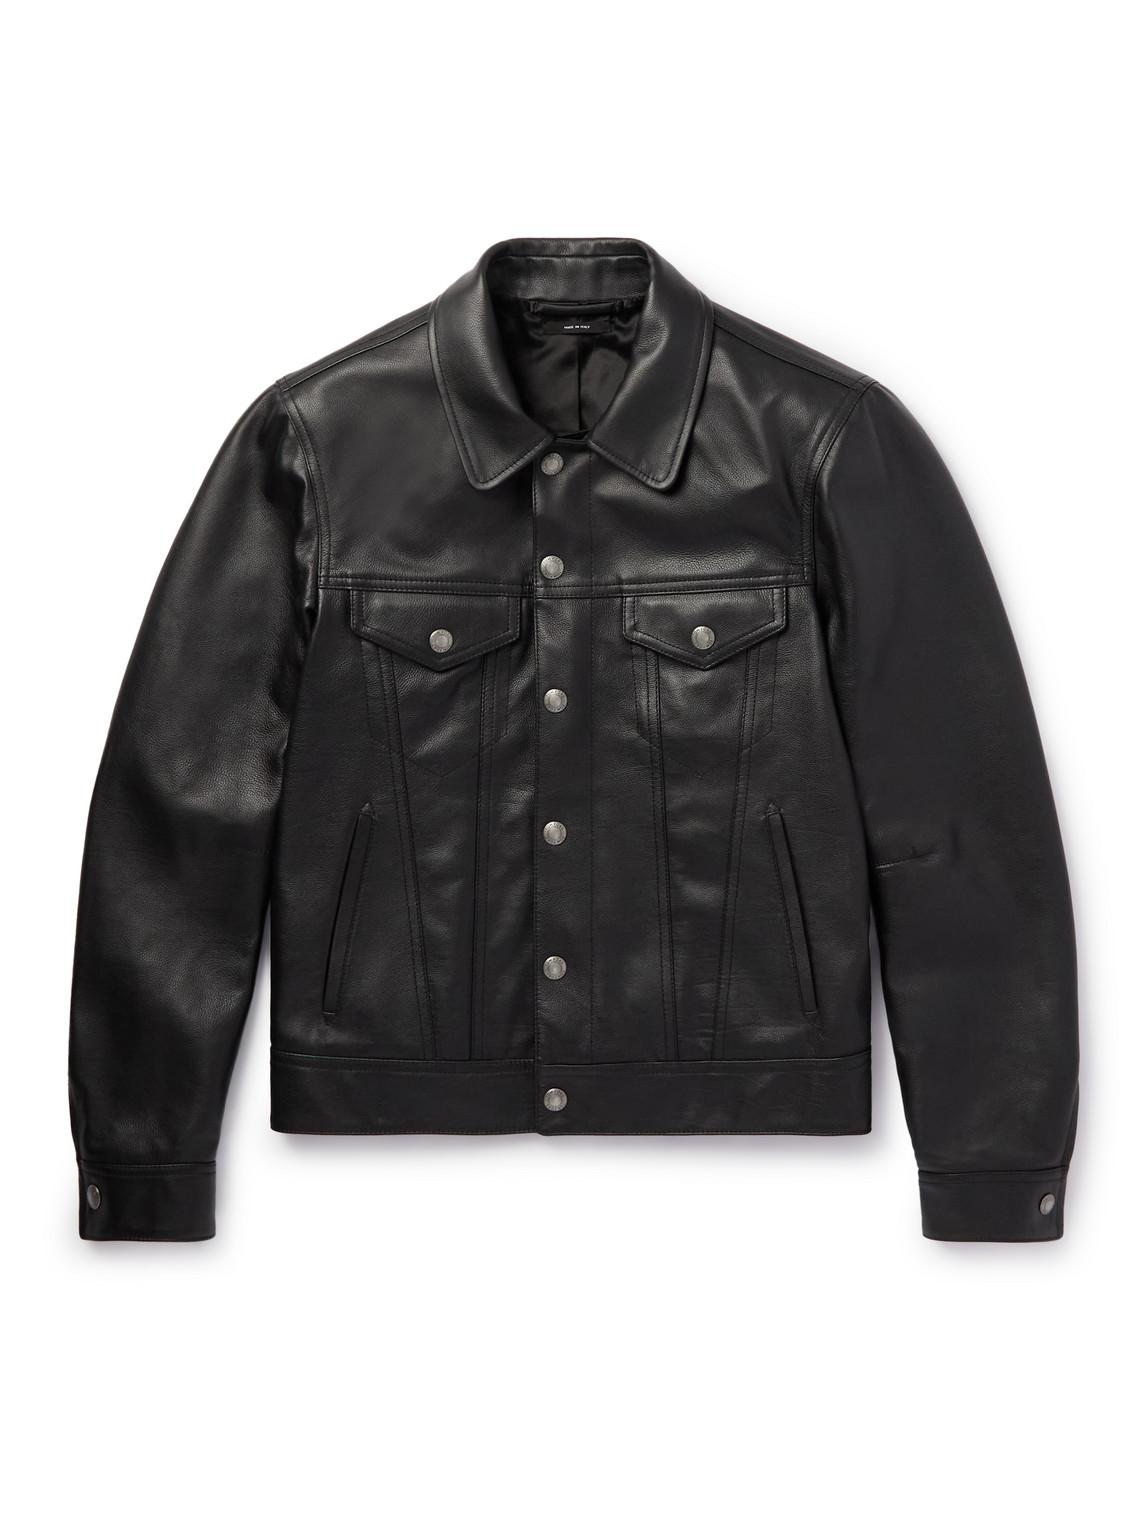 Tom Ford Full-grain Leather Trucker Jacket in Black for Men | Lyst